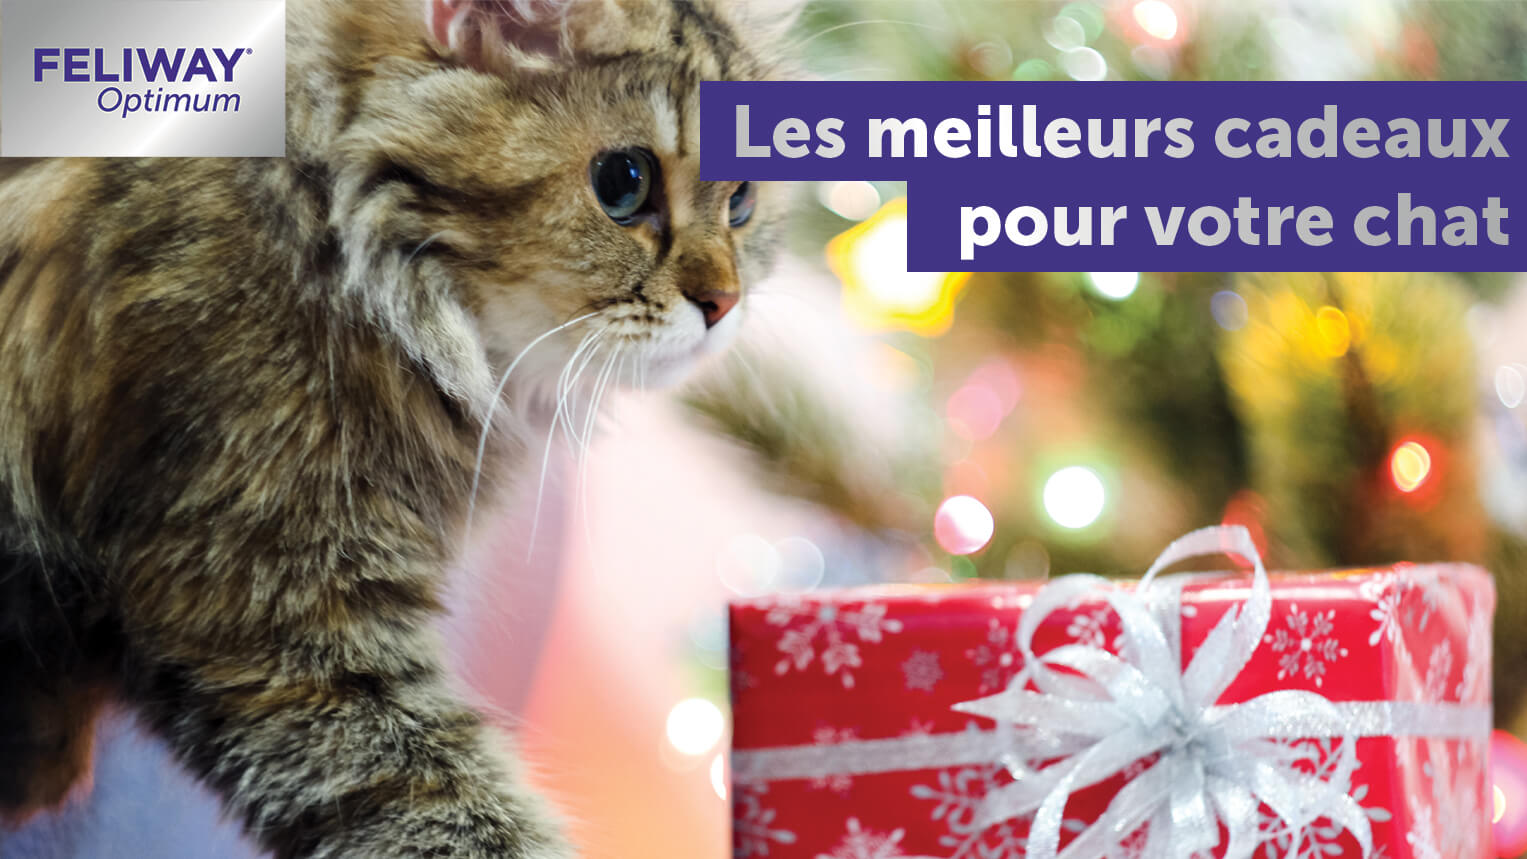 Les Meilleurs Cadeaux pour Votre Chat ! - FELIWAY France